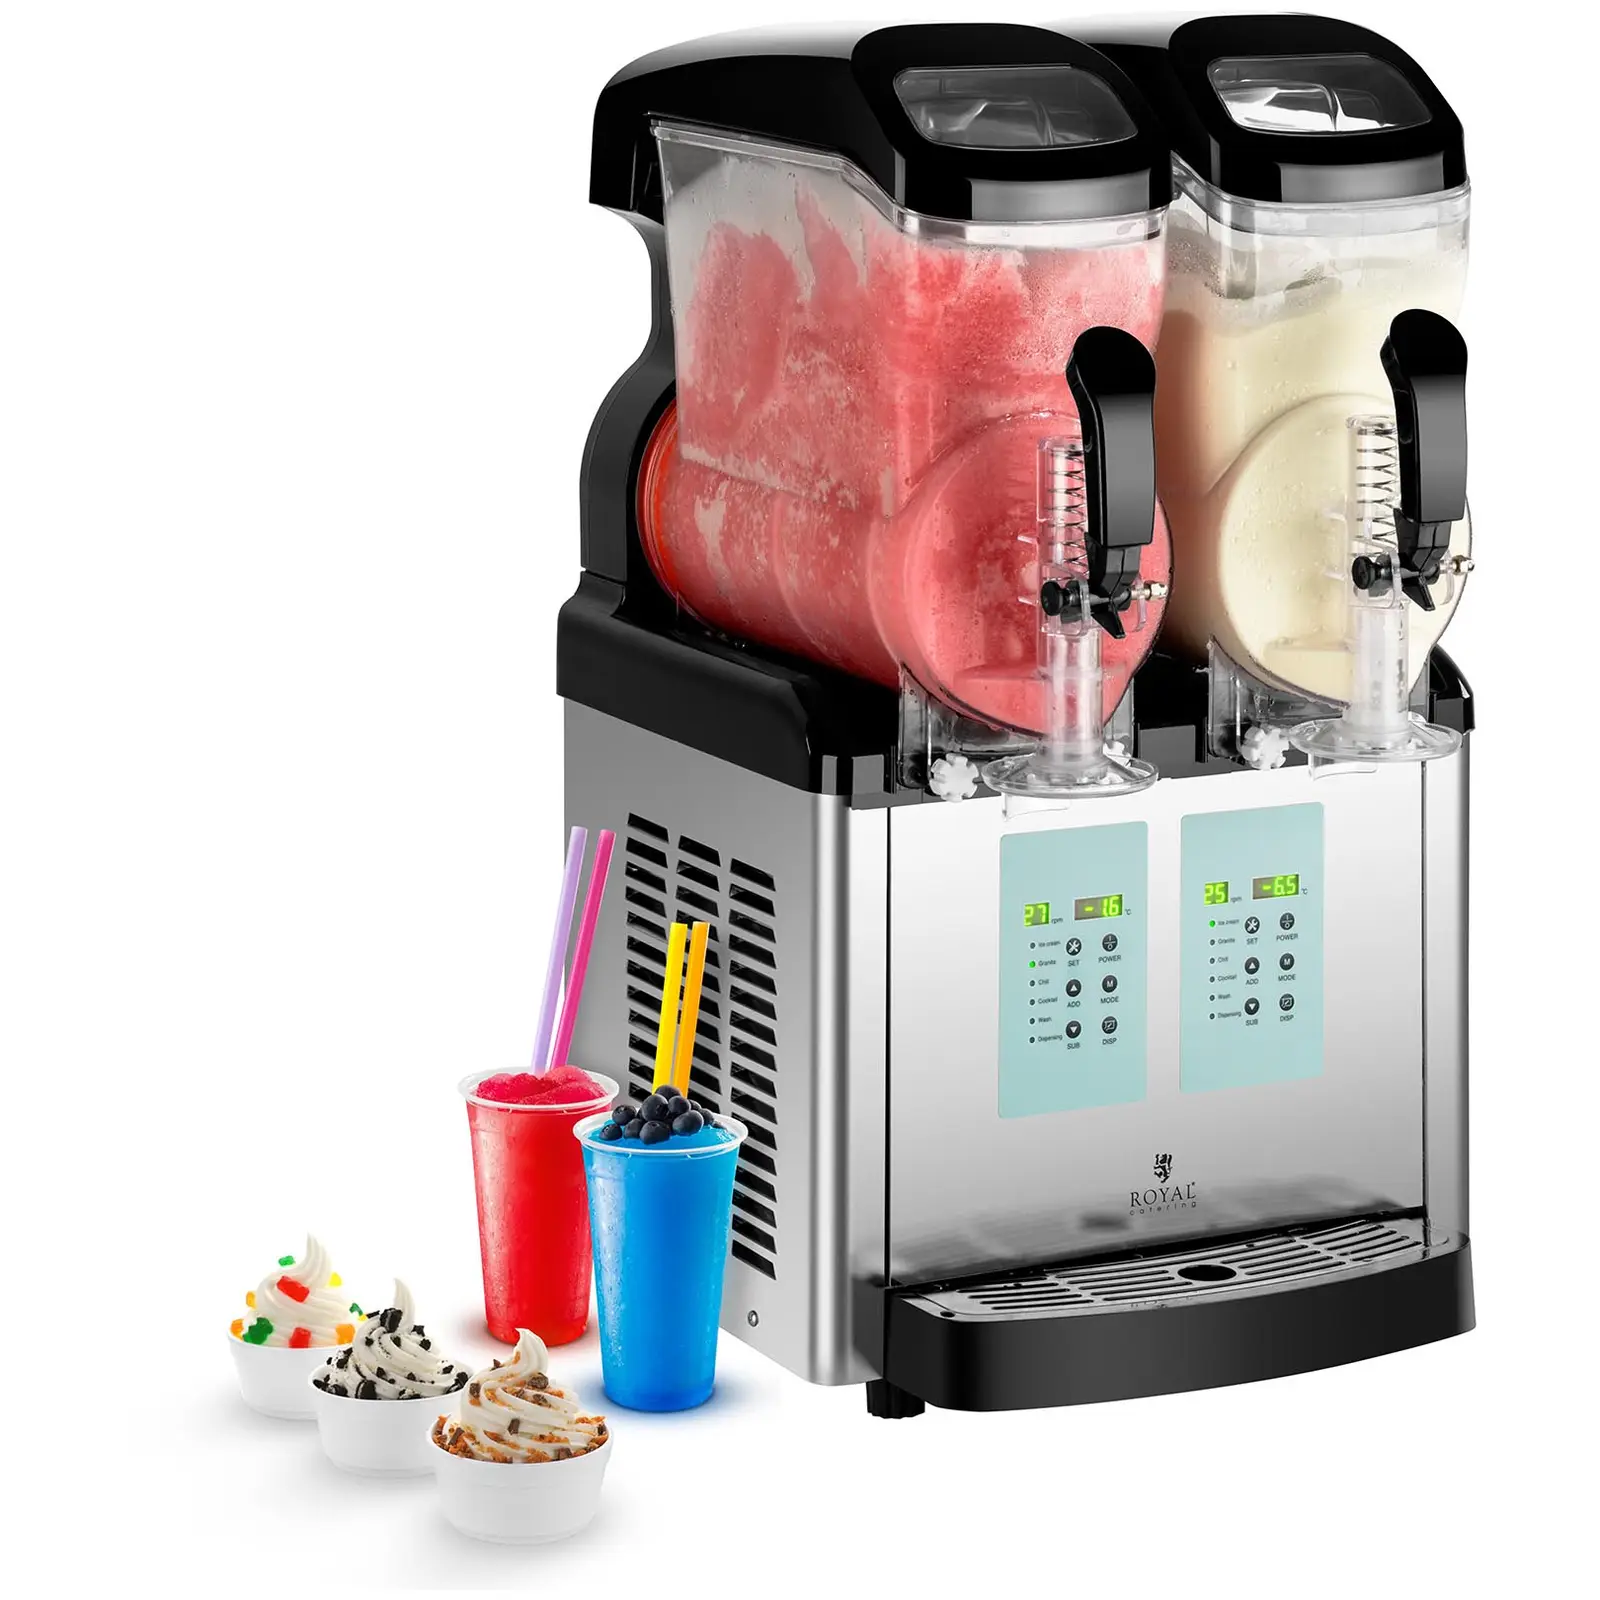 Machine à granitas - 2 x 6 litres - Température min. de -20 °C - Fonction crème glacée